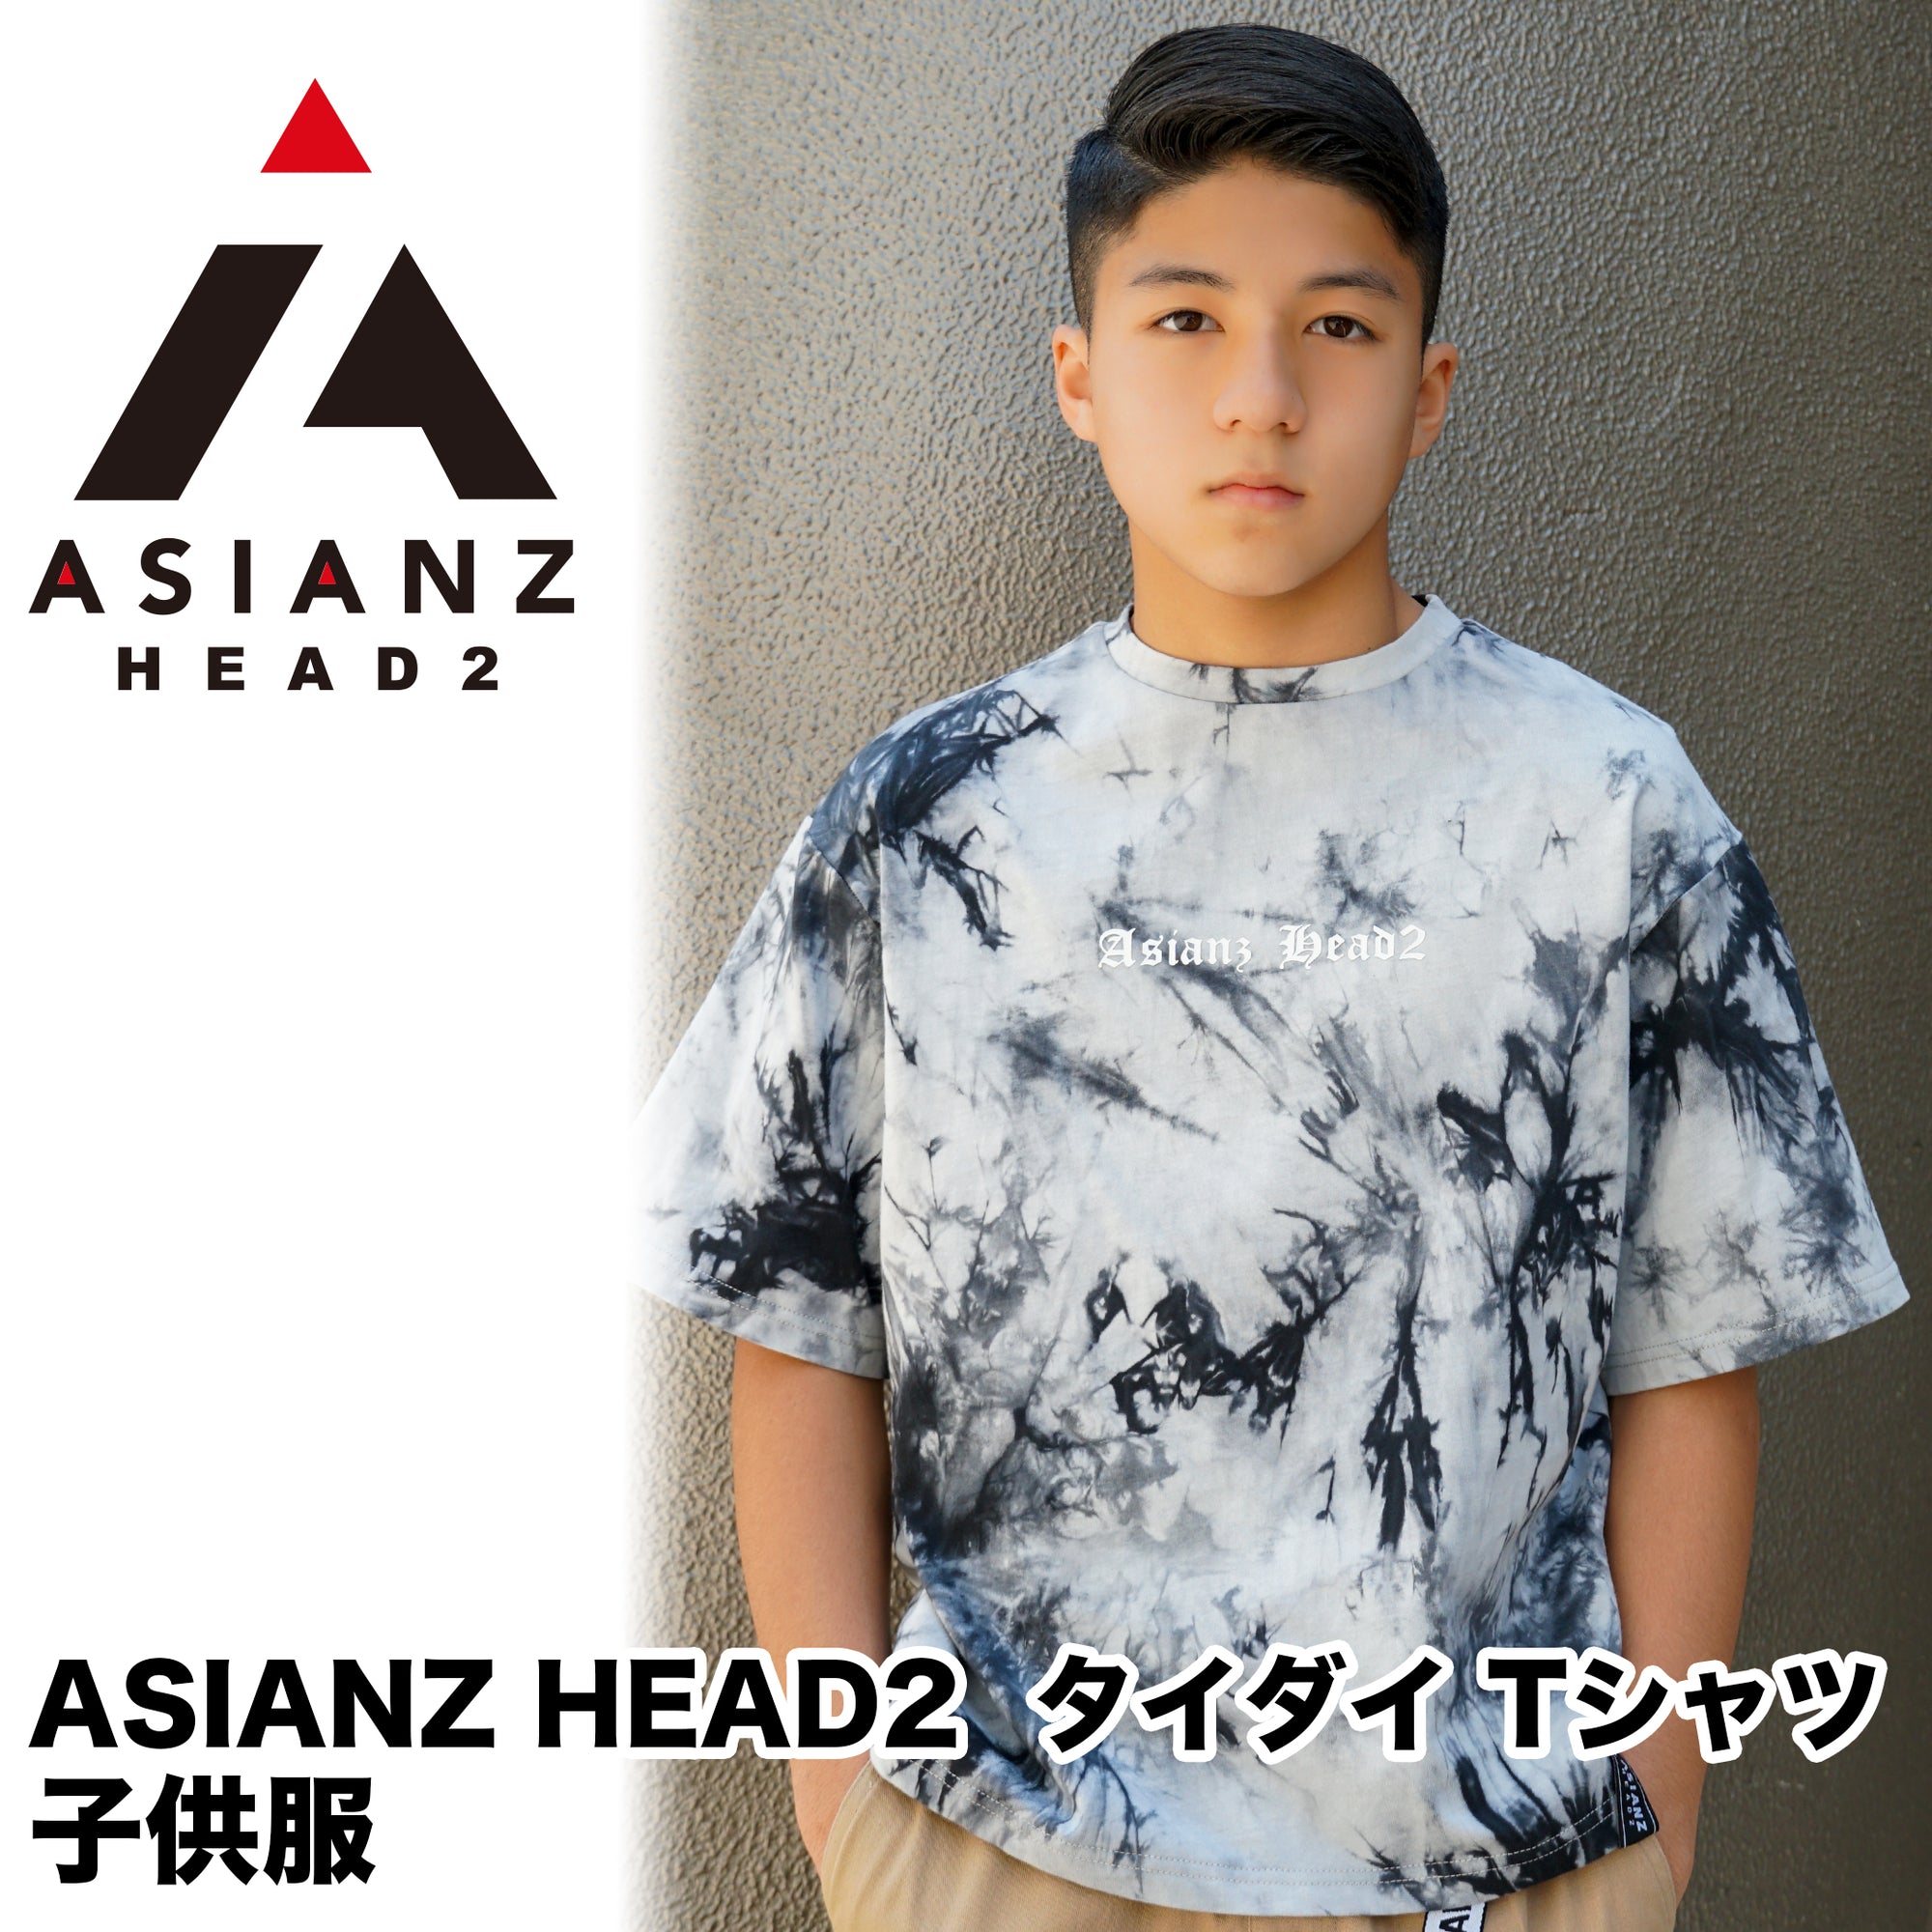 (40%オフ! セール商品)ASIANZ HEAD2 タイダイ Tシャツ キッズウェアー